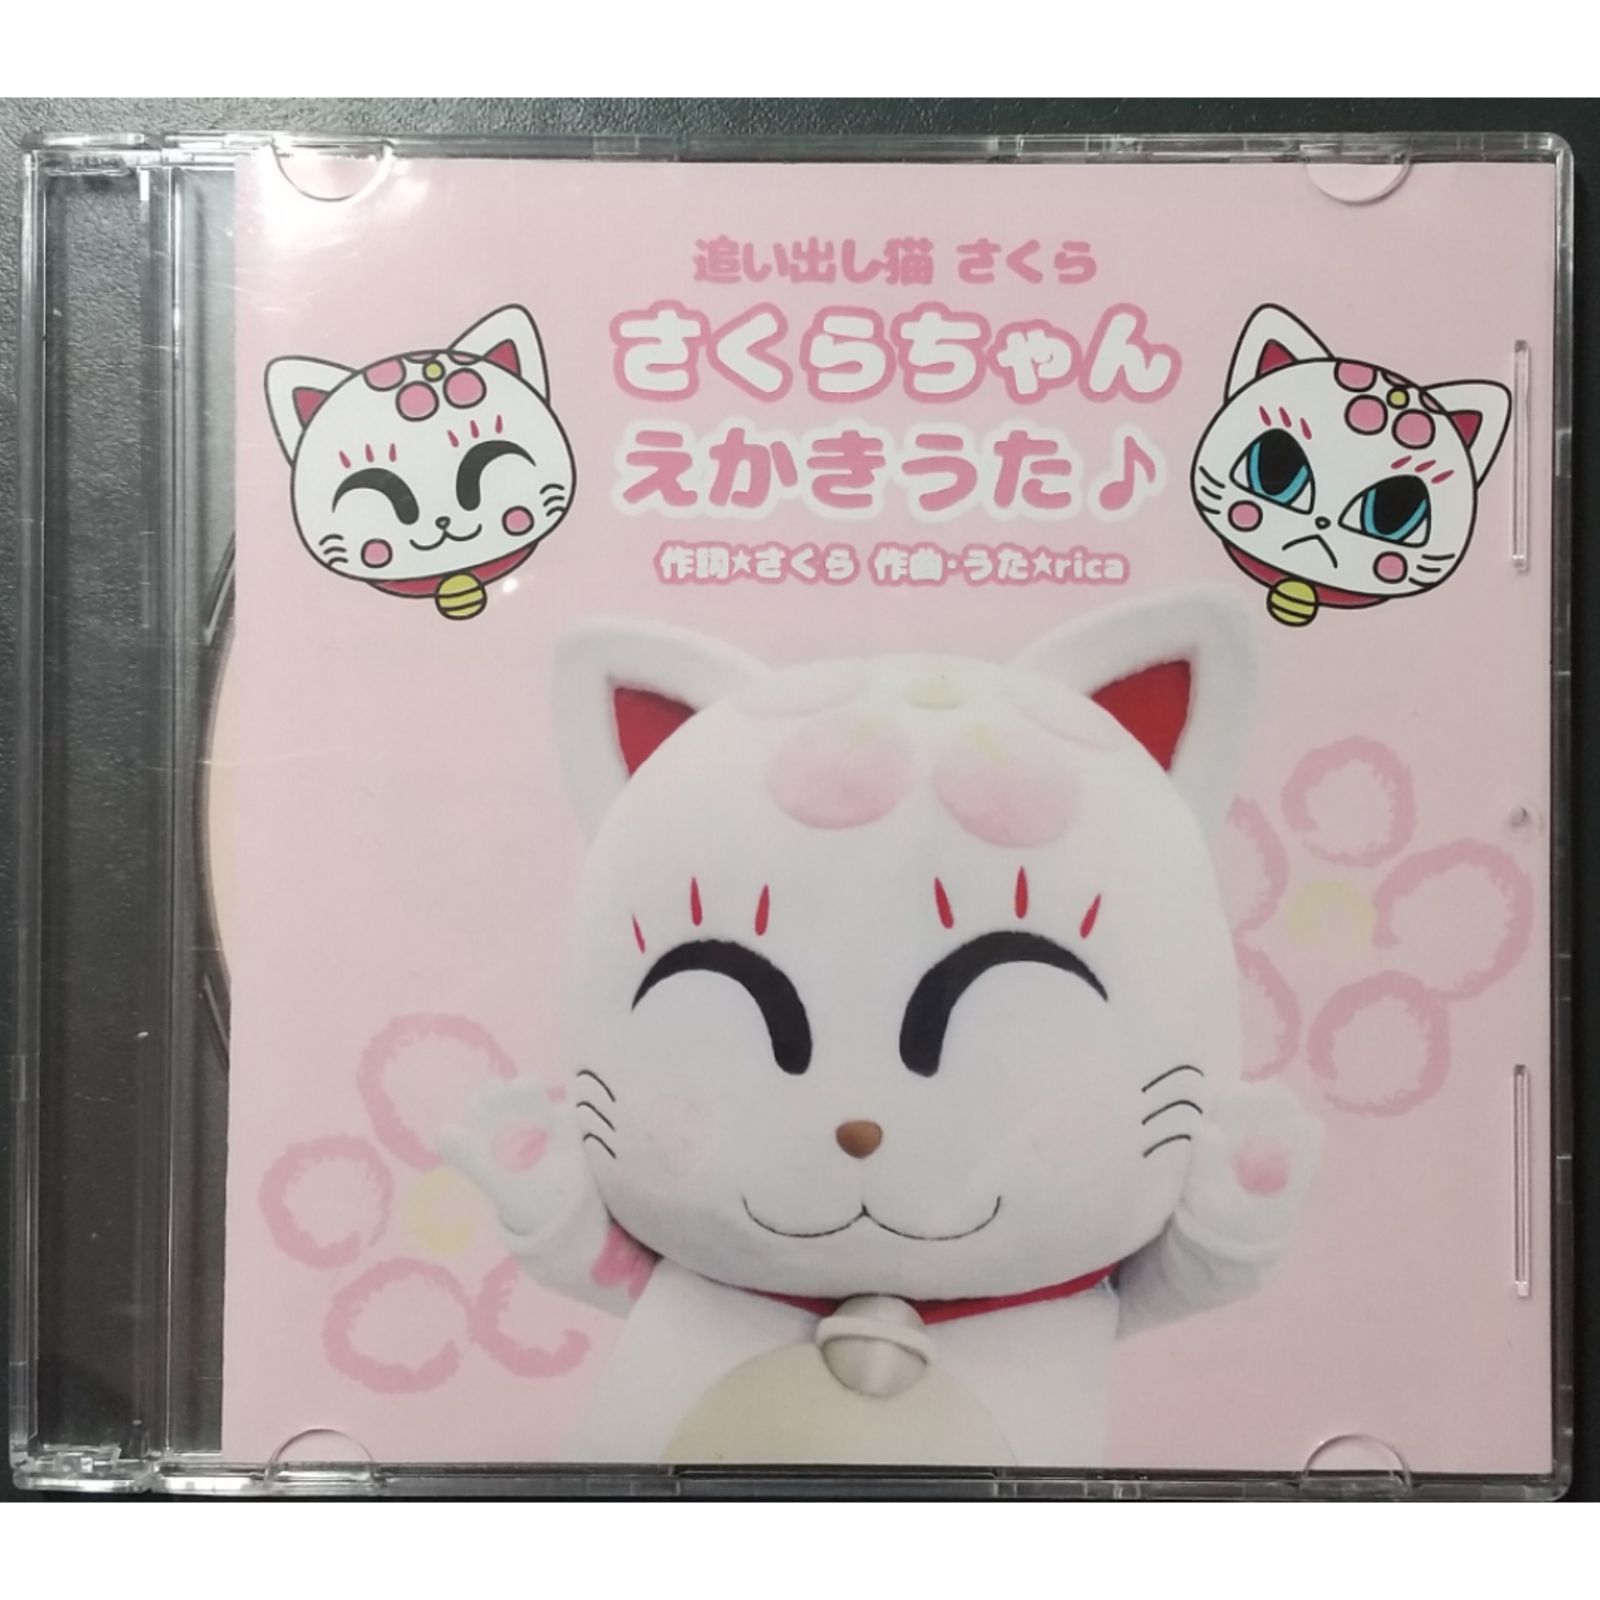 さくらちゃんえかきうた♪【CD】カラオケ入り全2曲